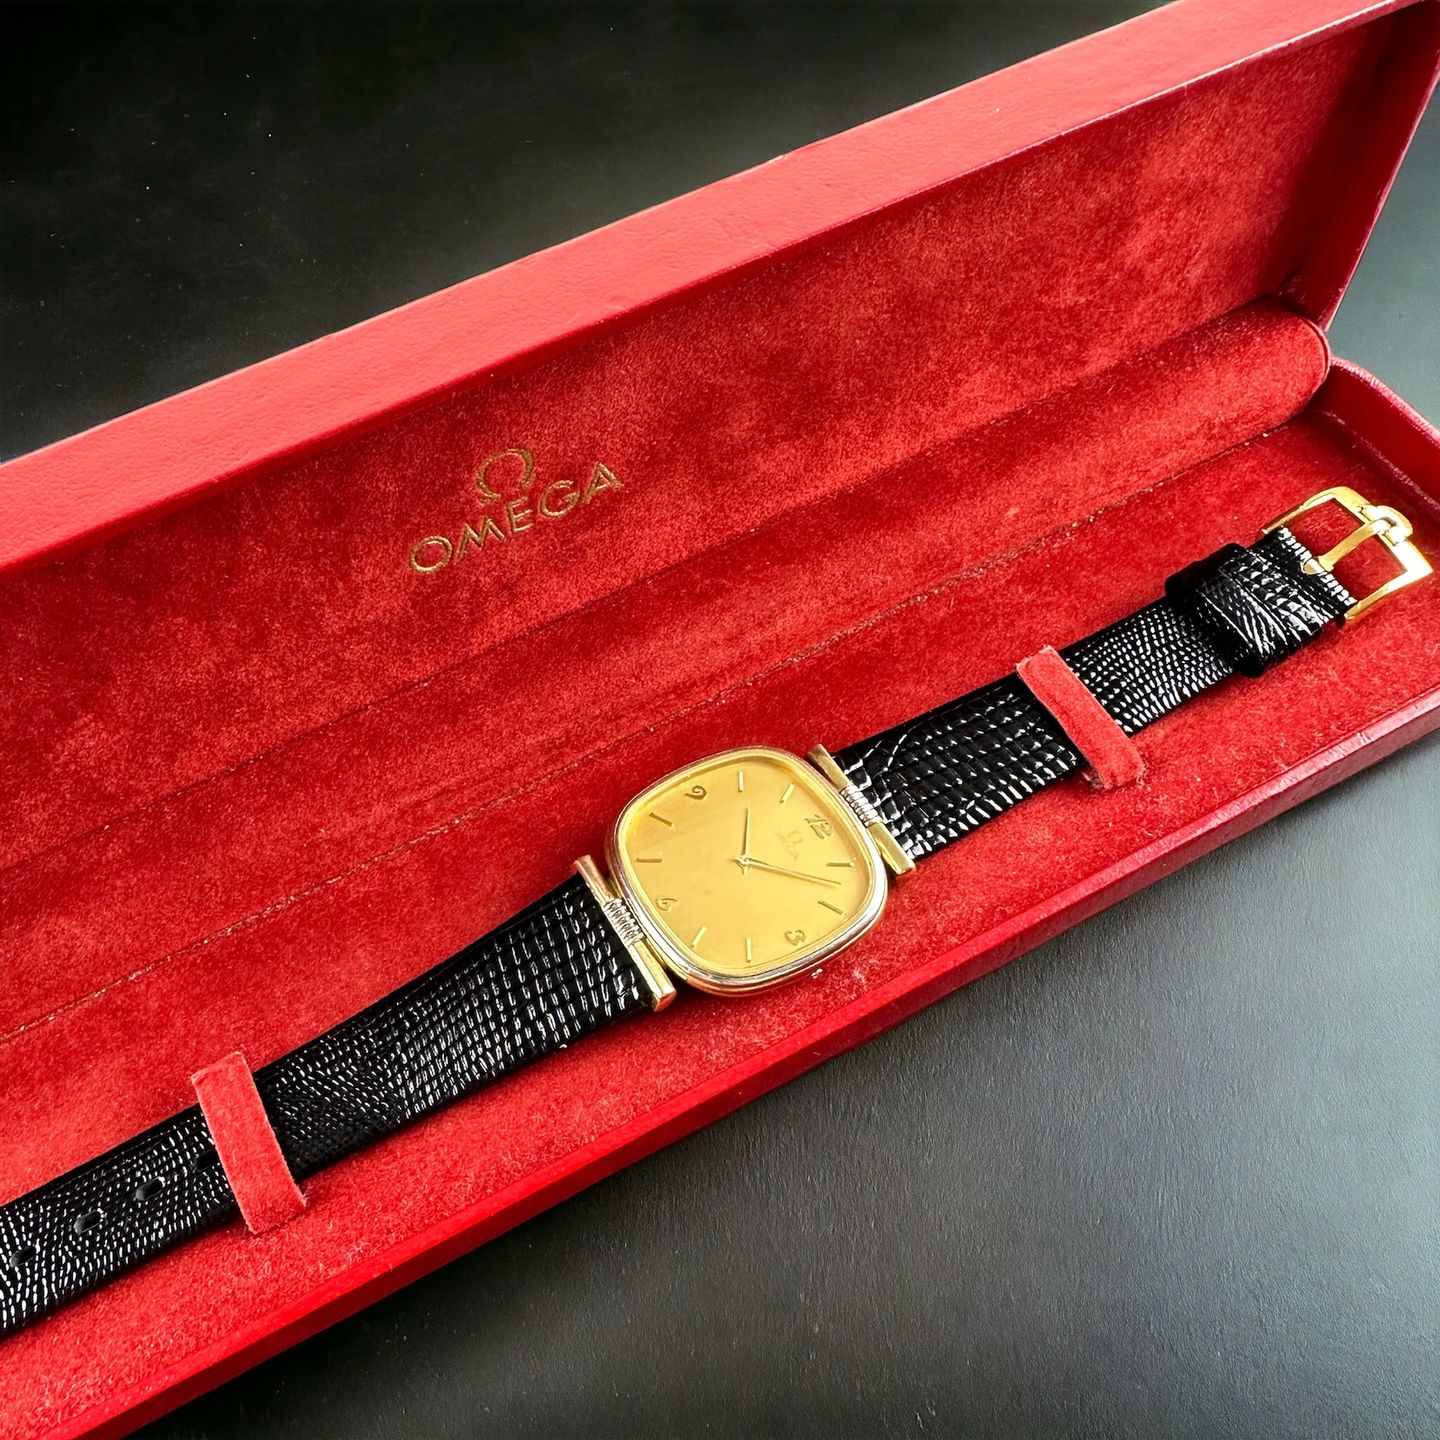 Omega De Ville 191.0171 (1982) - Champagne dial 34 mm Gold/Steel case (2/8)